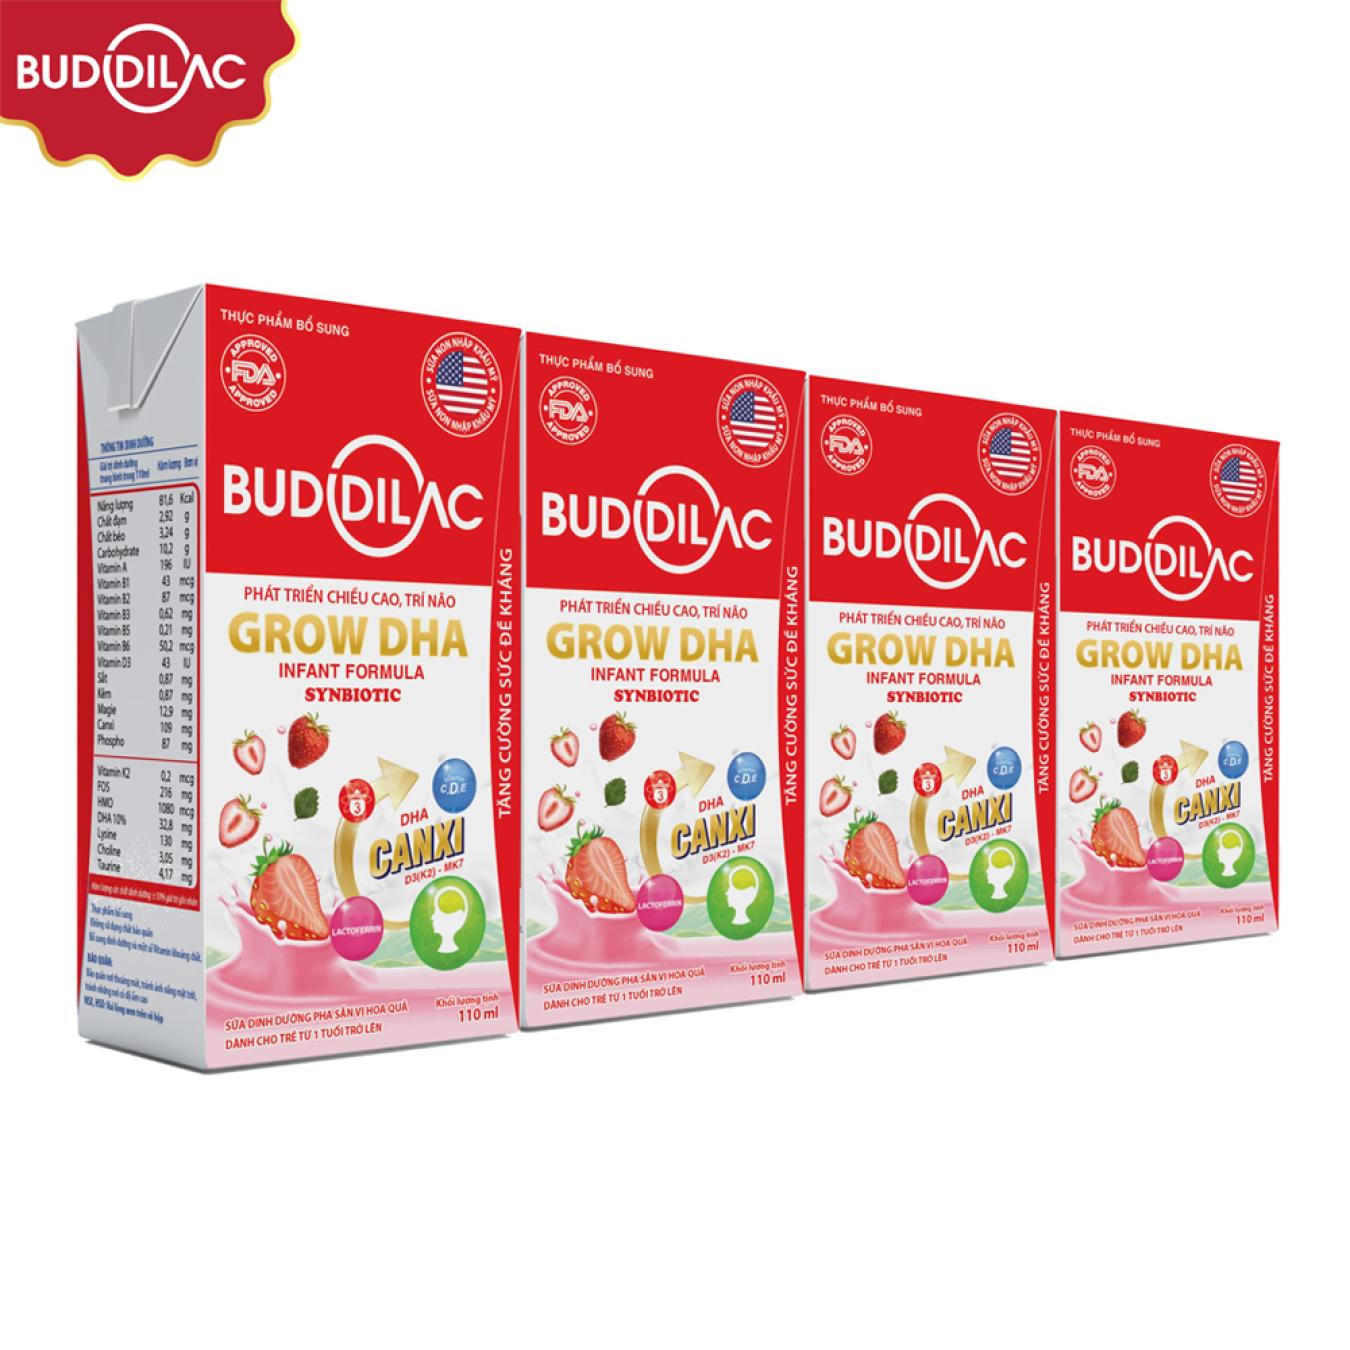 sữa pha sẵn cao năng lượng Buddilac Grow DHA 48 hộp